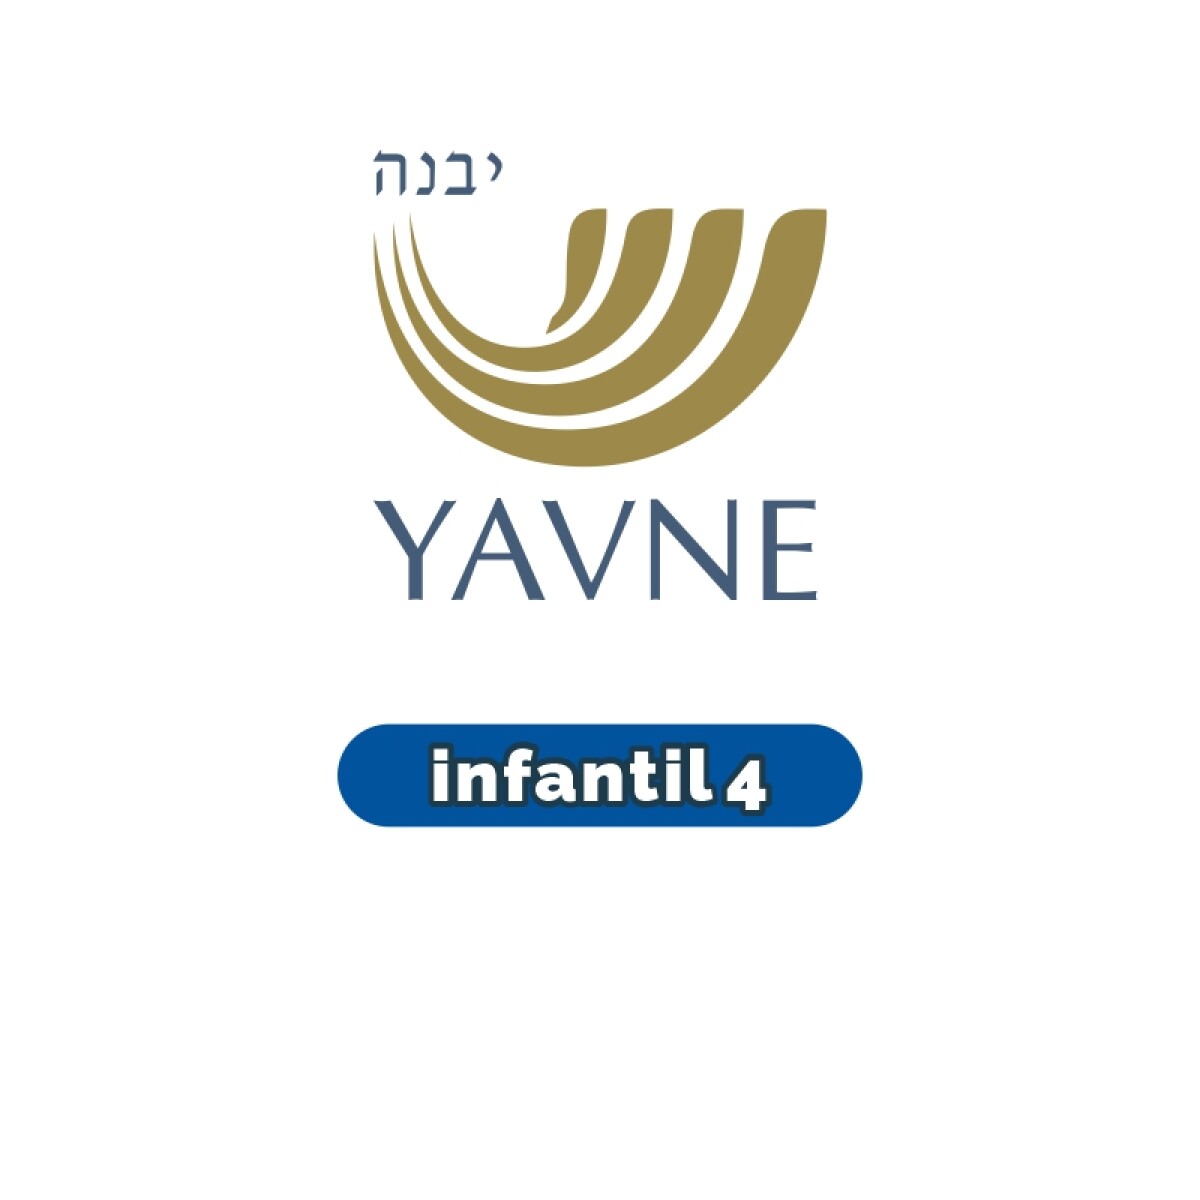 Lista de materiales - Infantil 4 YAVNE 